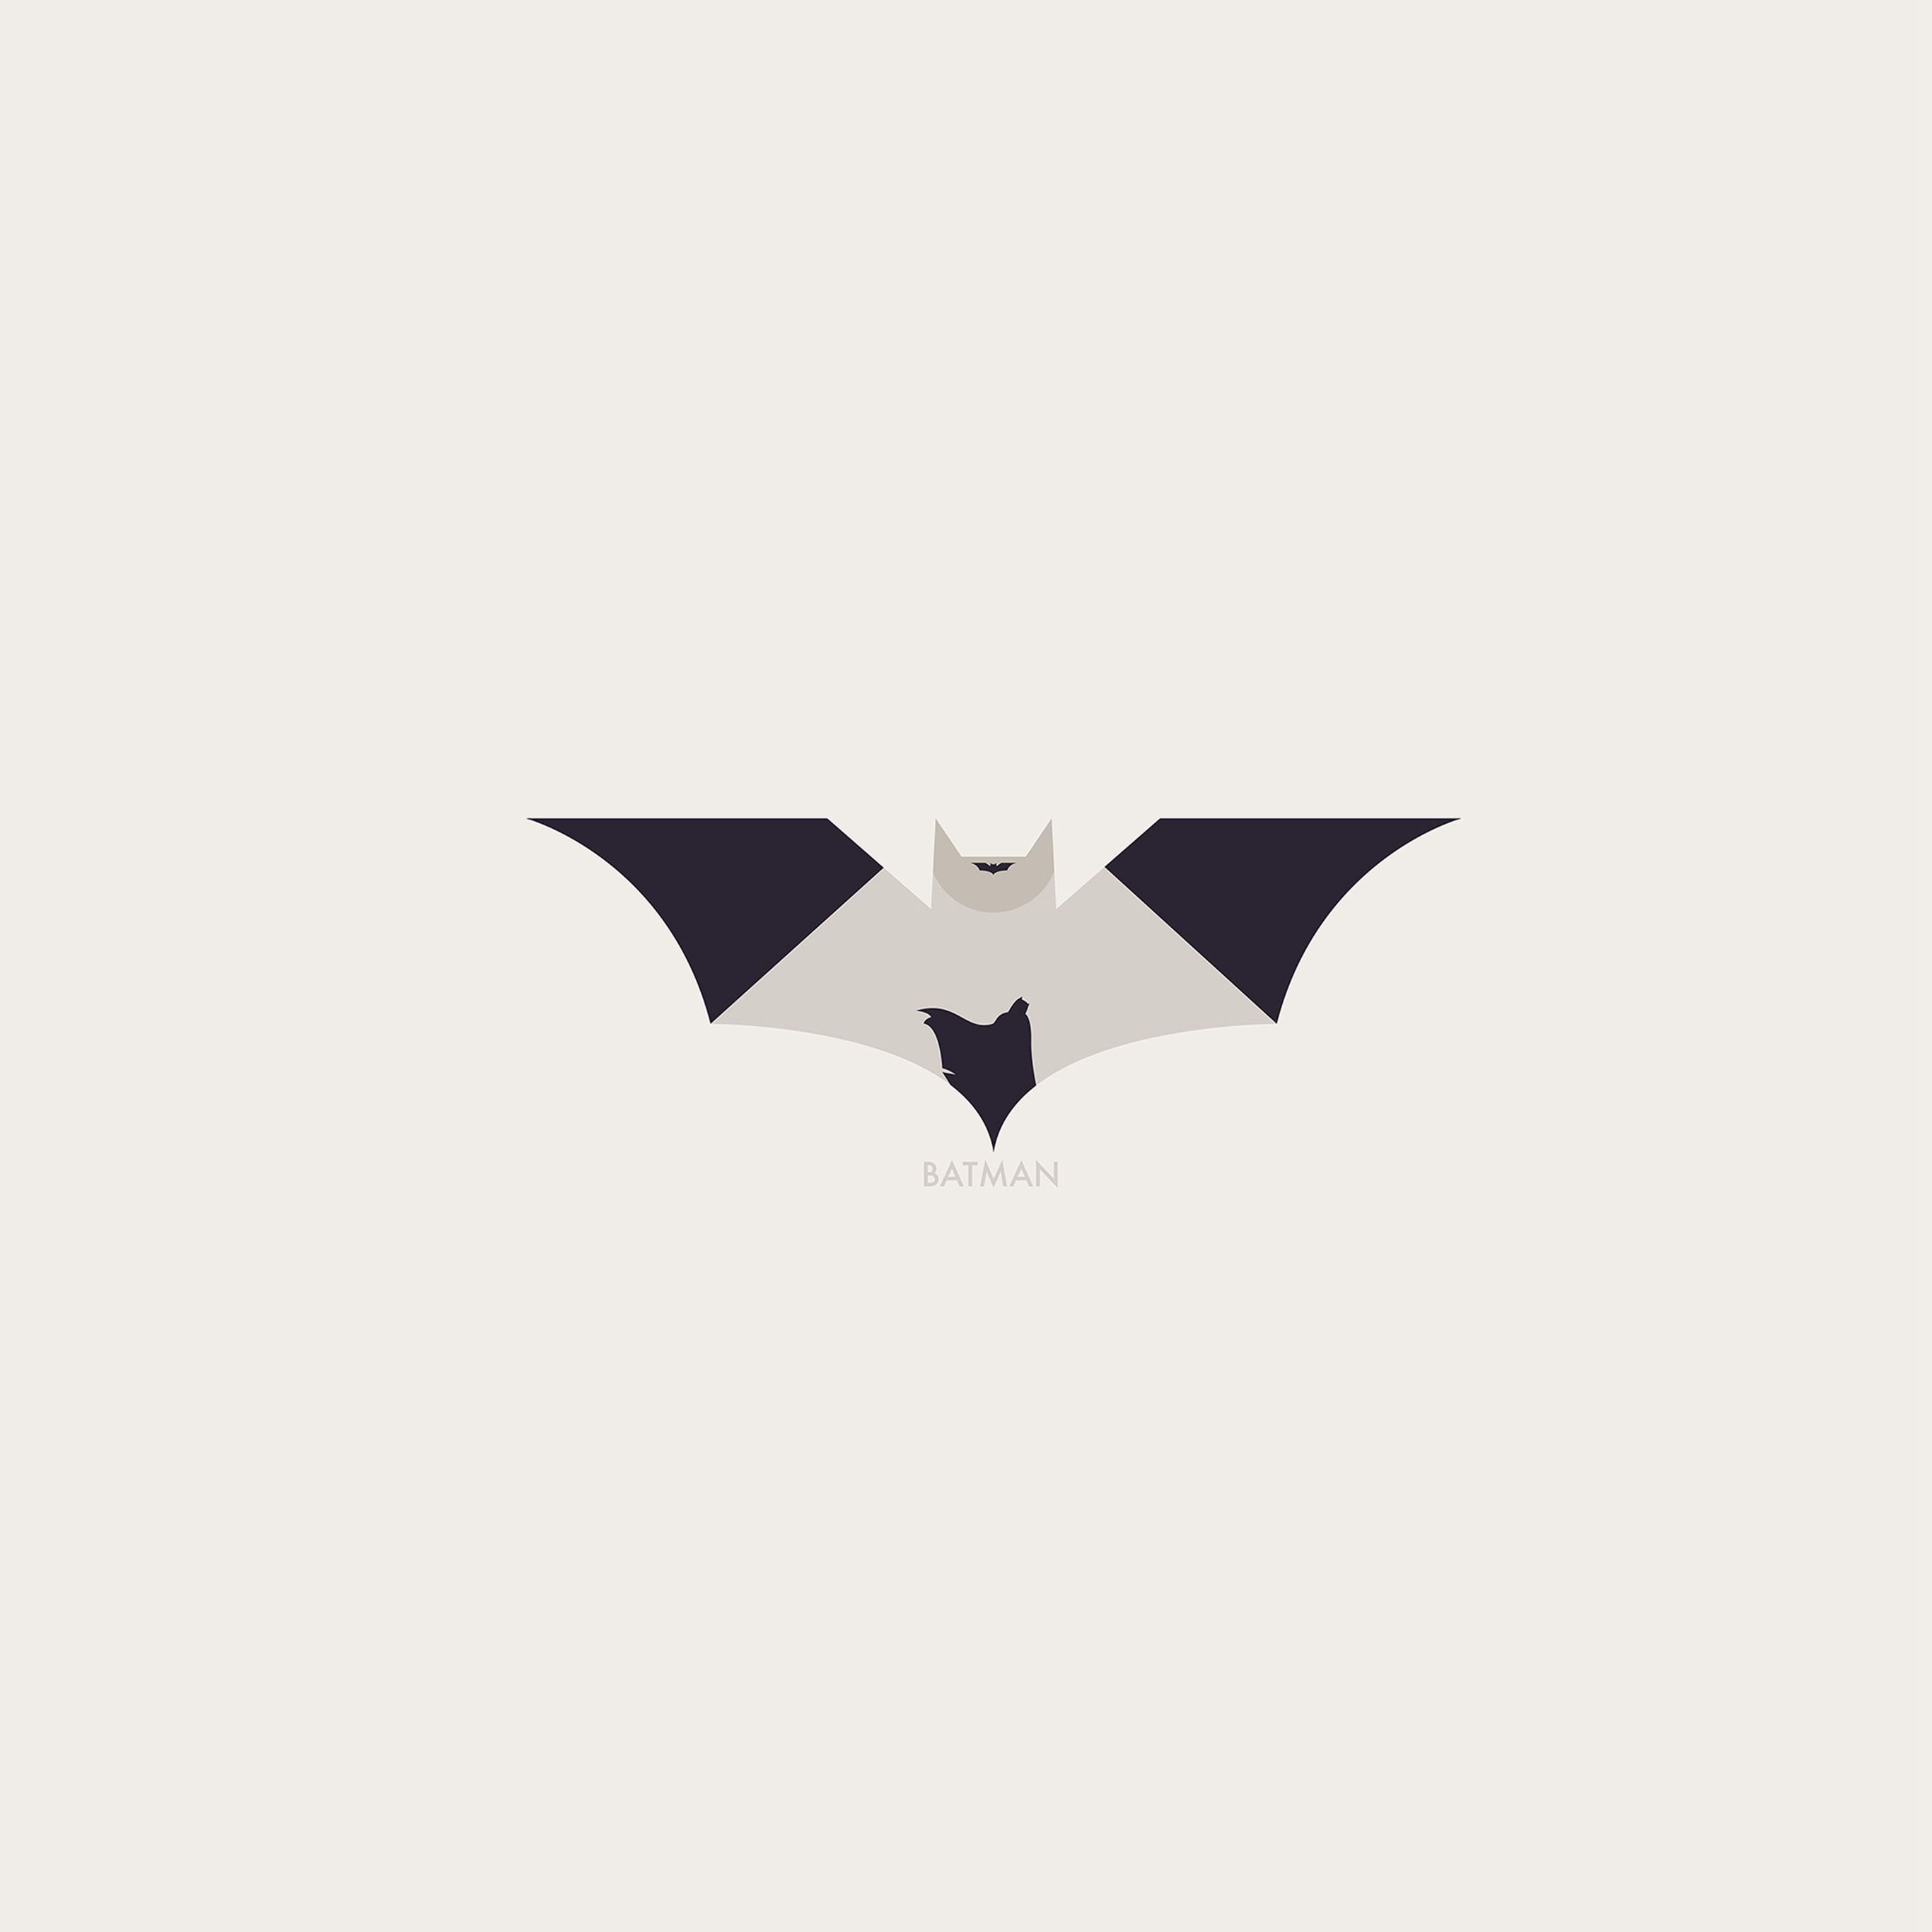 Batman Minimal Logo Illust Art iPad Pro Wallpaper Free Download